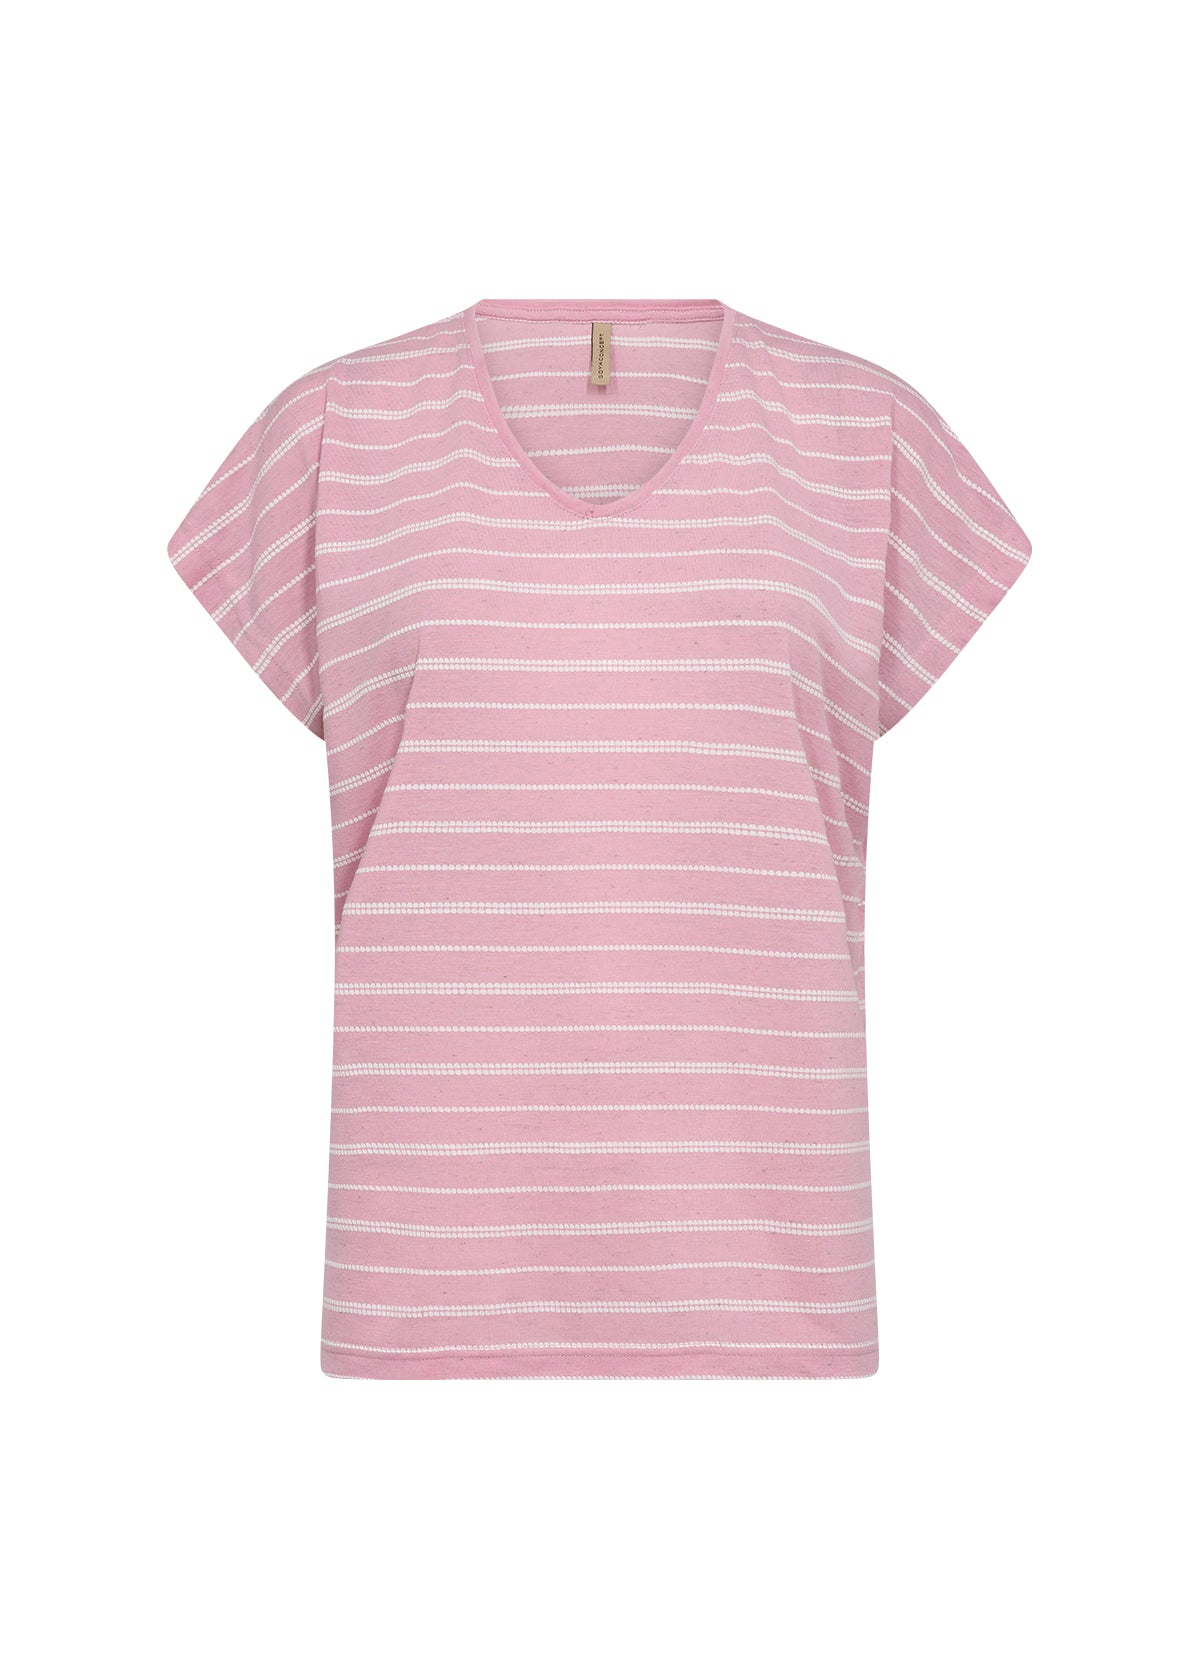 Defne T-Shirt in Pink